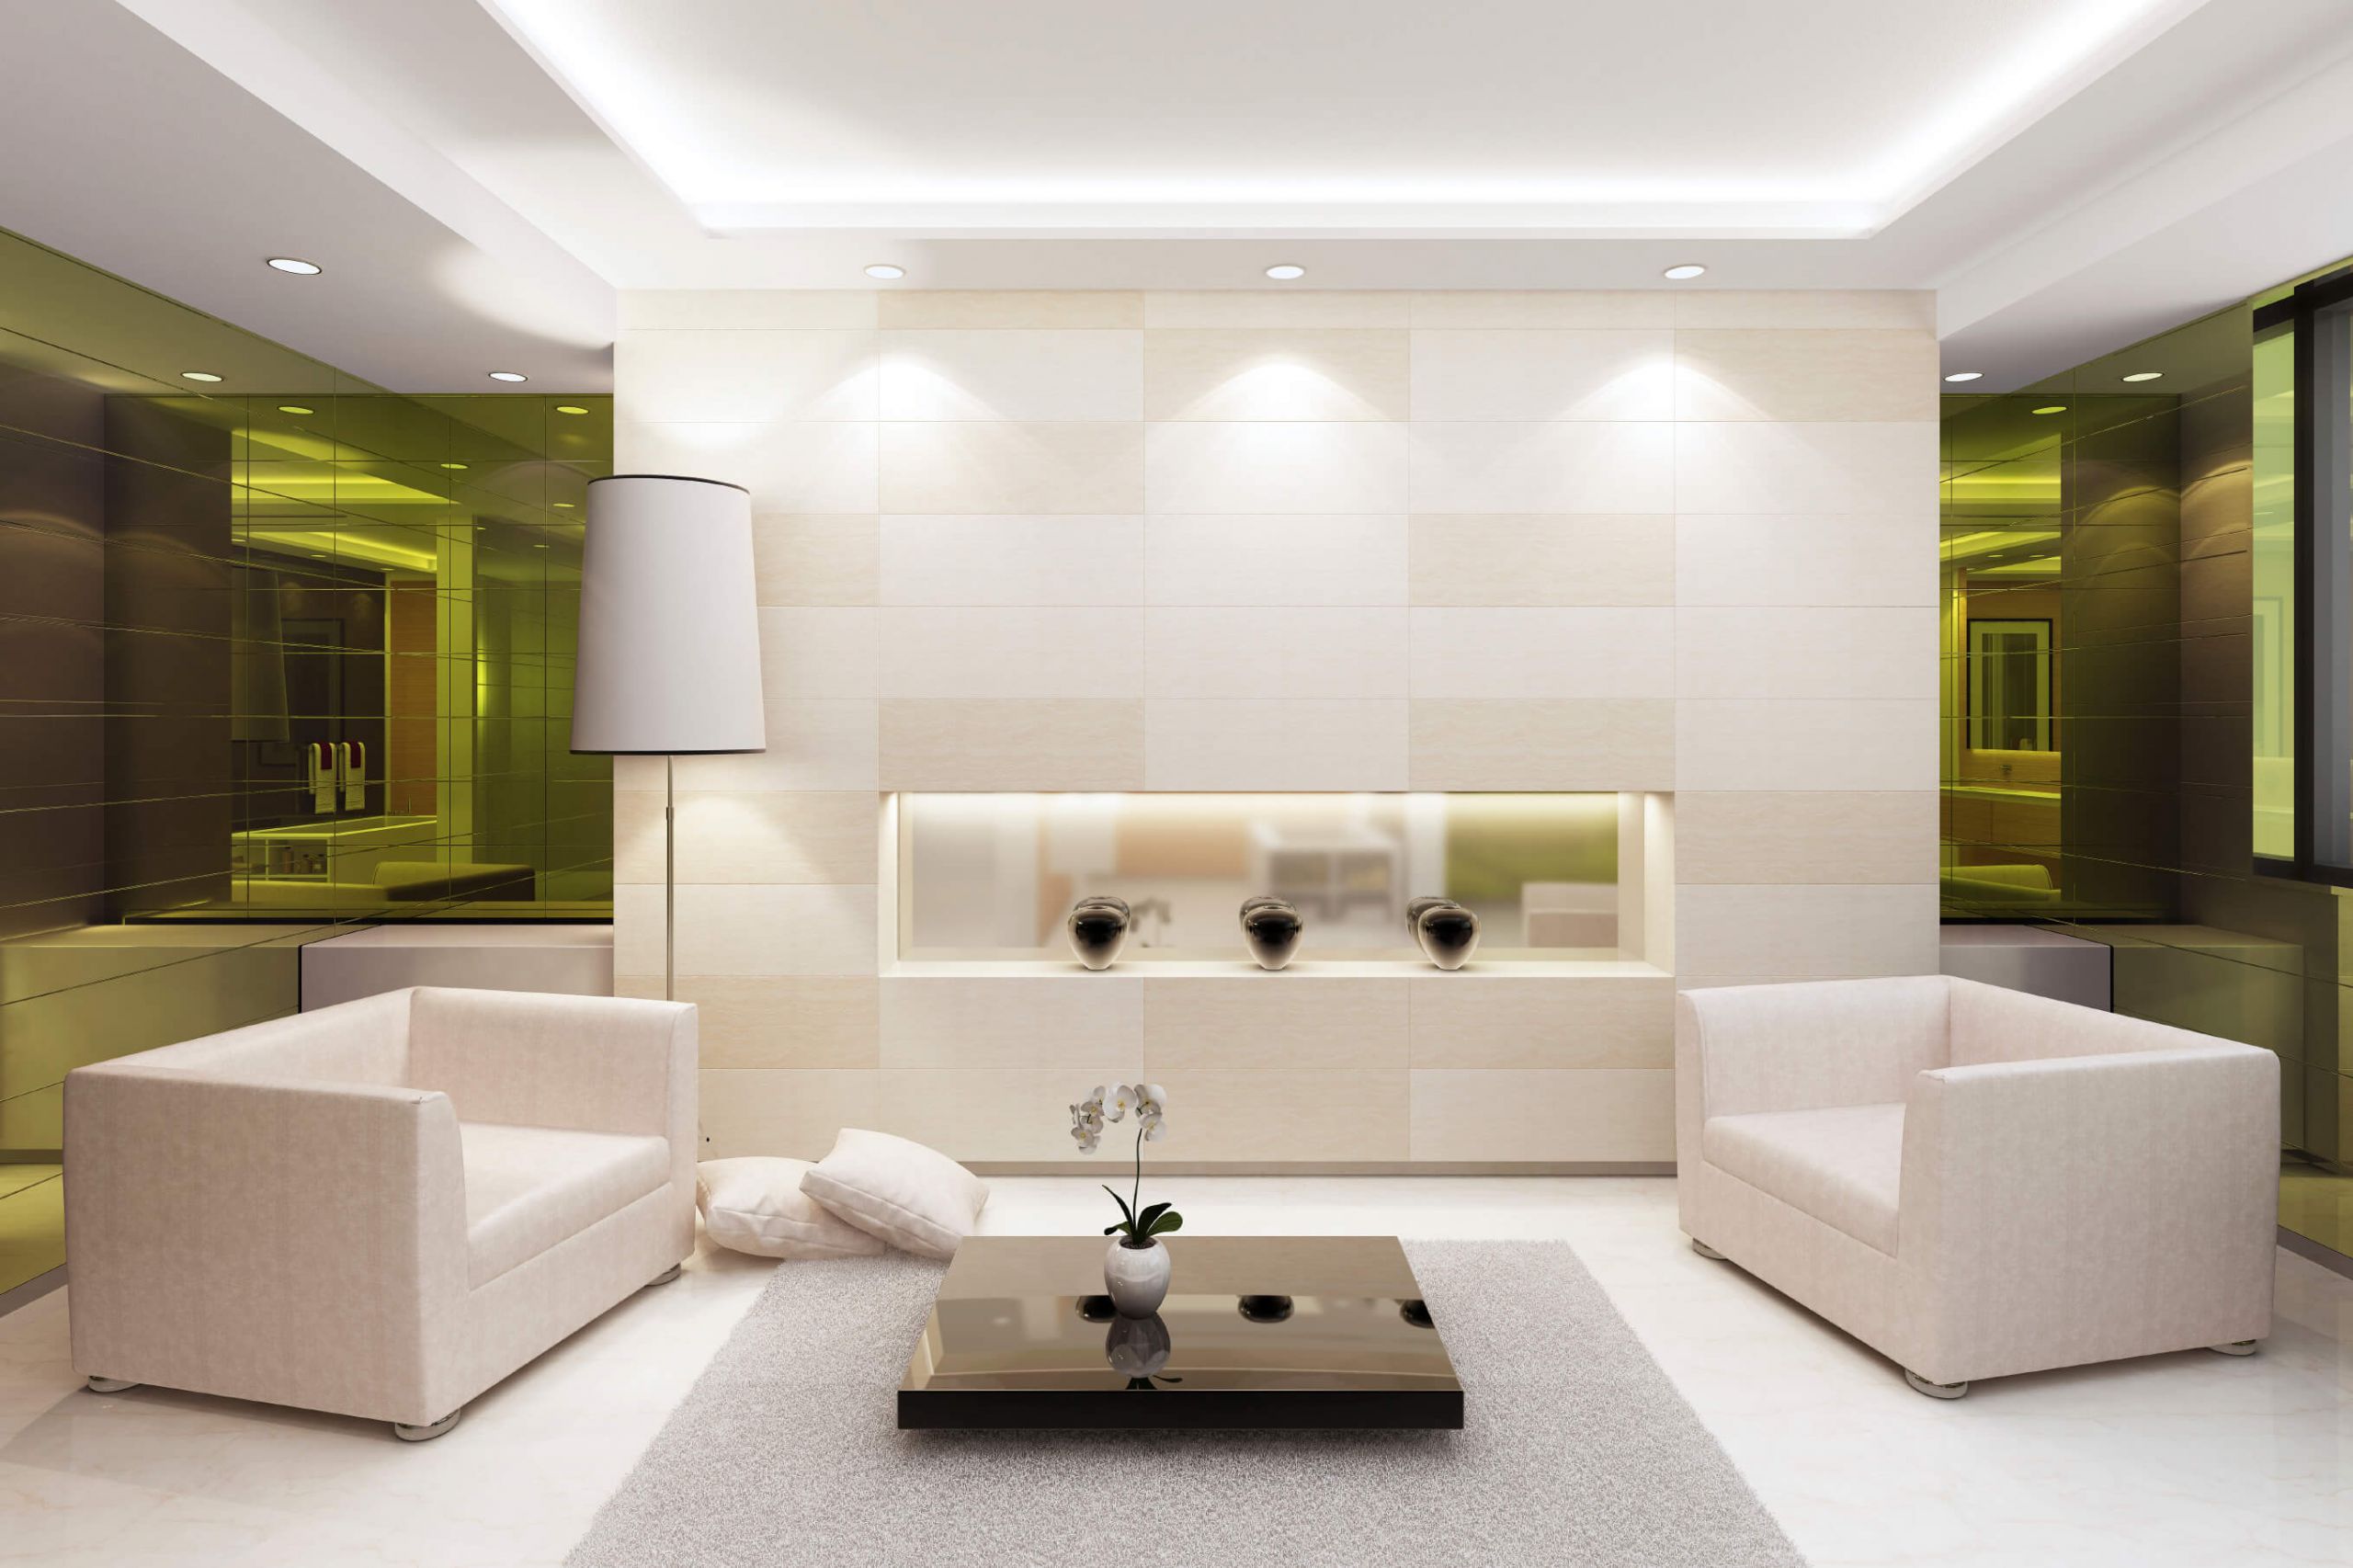 Living Room Spotlights Beautiful 40 Bright Living Room Lighting Ideas